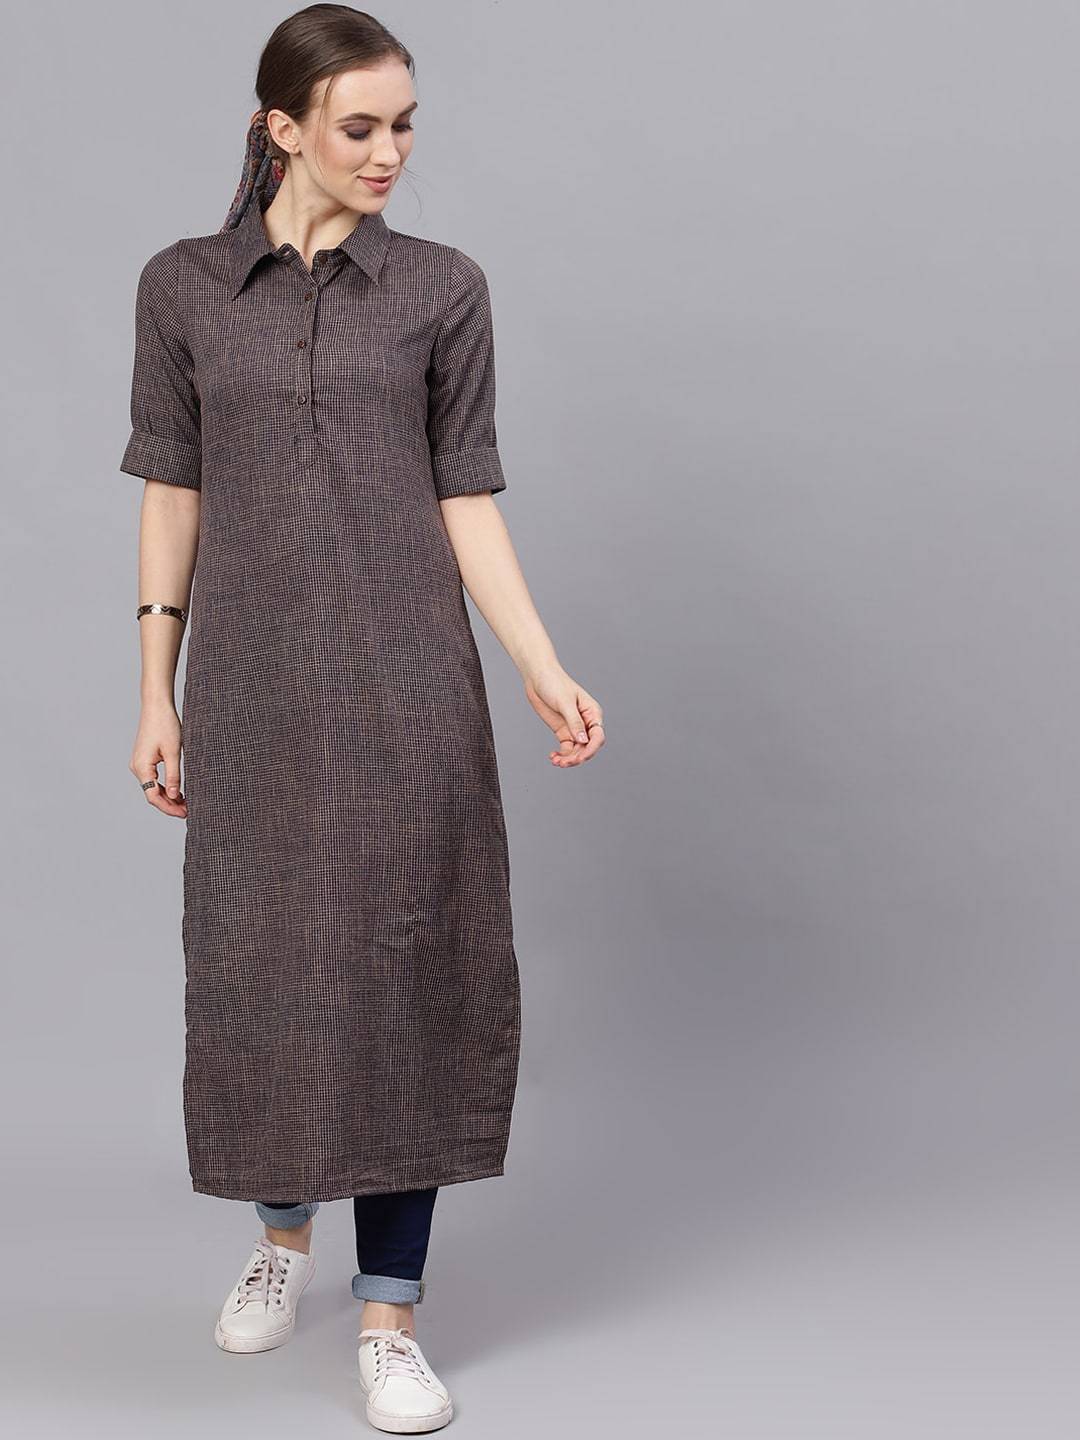 Women's  Blue & Grey Woven Design Pathani Kurta - AKS